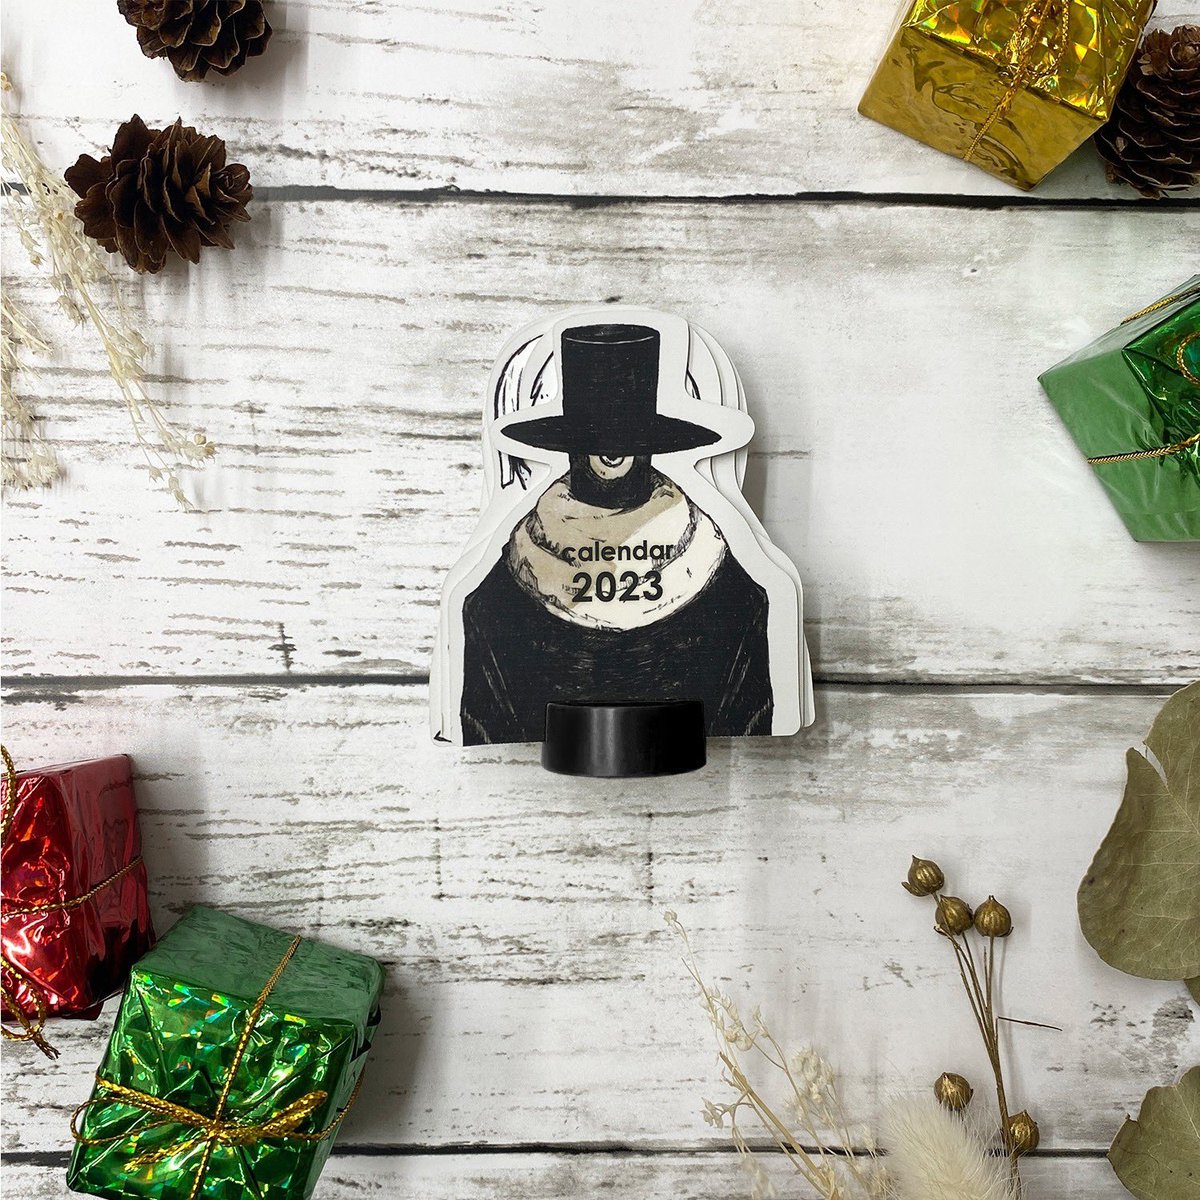 ■Baumkuchen party set

ボックス内容の実物写真を公開🎉
クリスマスパーティーを彩る食器デザインに仕上がりました。

■受注期間:11/6(日)23:59まで

■購入特典:
2023年ミニカレンダー
* 10,000円以上のご購入

#Eve_Goods
https://t.co/wh8KtoueVg 